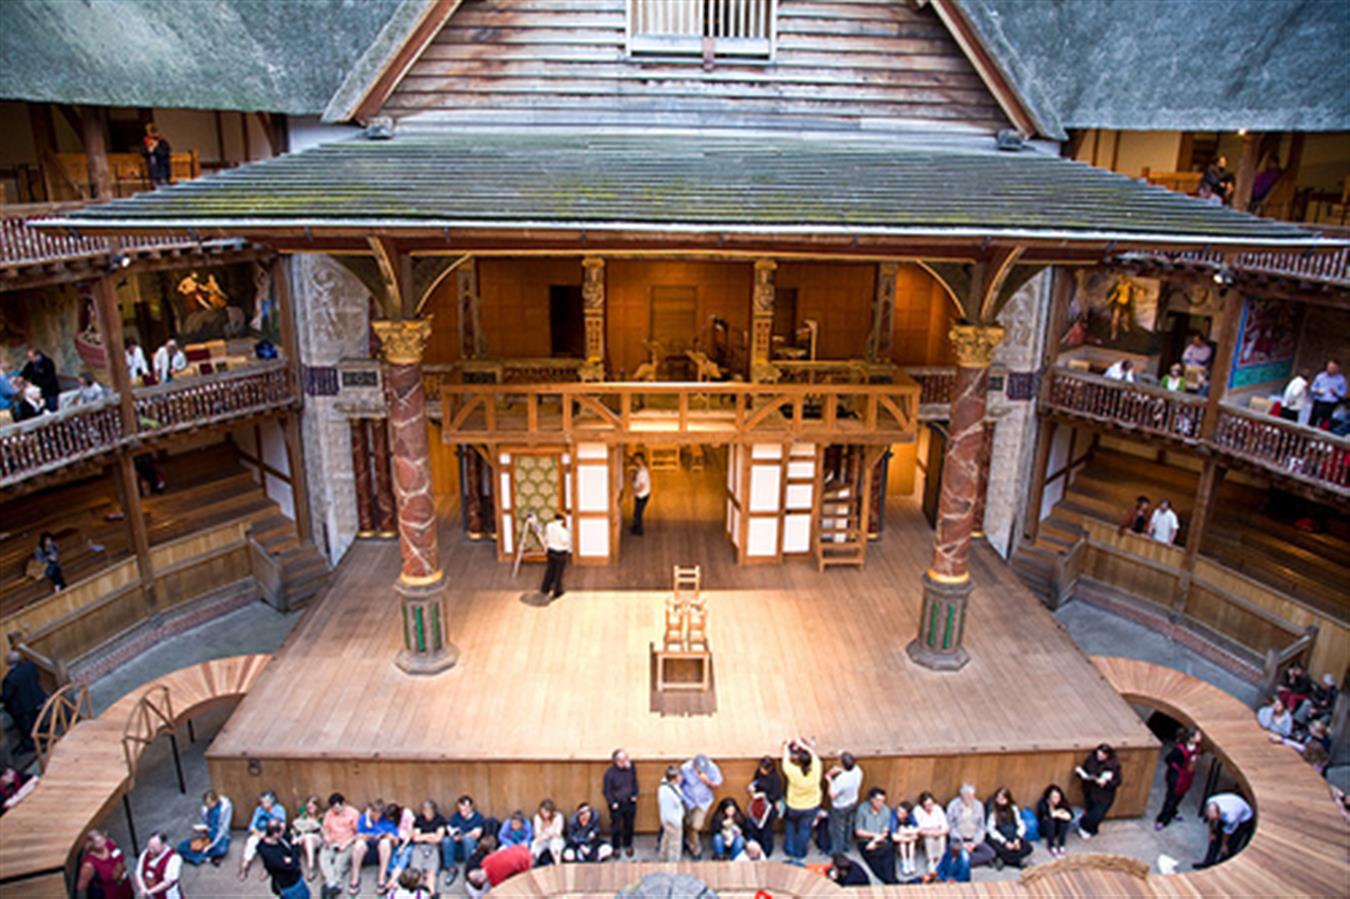 Travel theater. Театр Глобус Шекспира в Лондоне. Глоуб театр в Лондоне. Уильям Шекспир театр Глобус. Шекспировский театр в Лондоне.